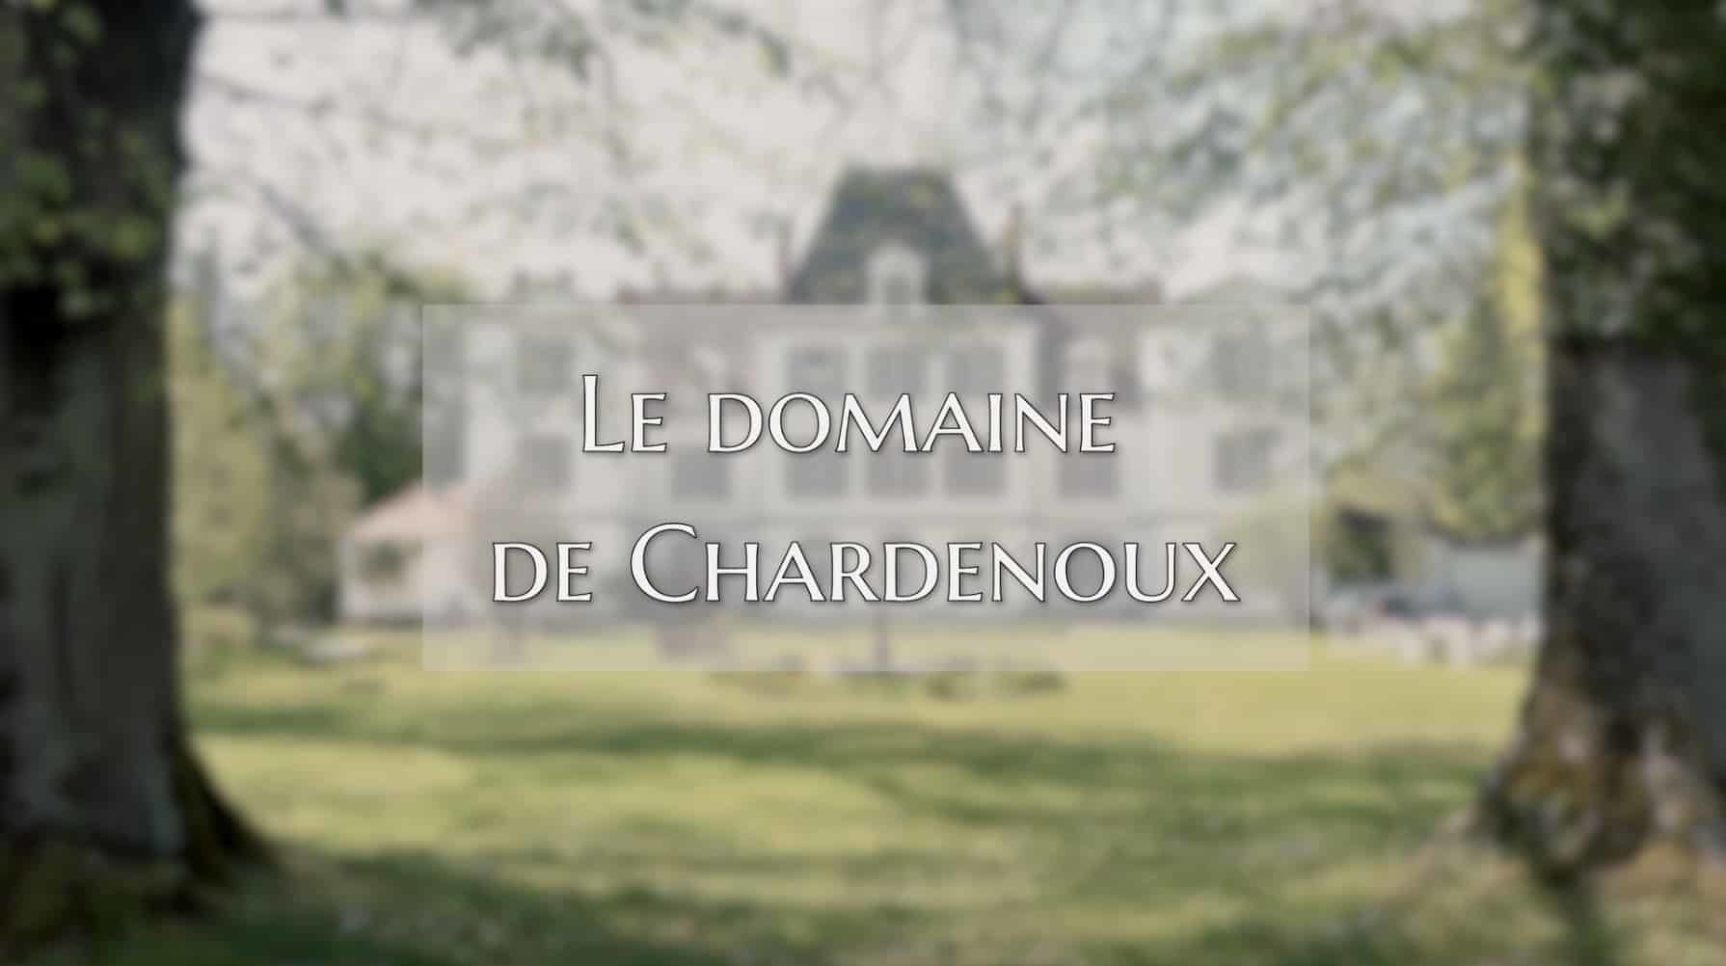 Le domaine de Chardenoux - Présentation 2021